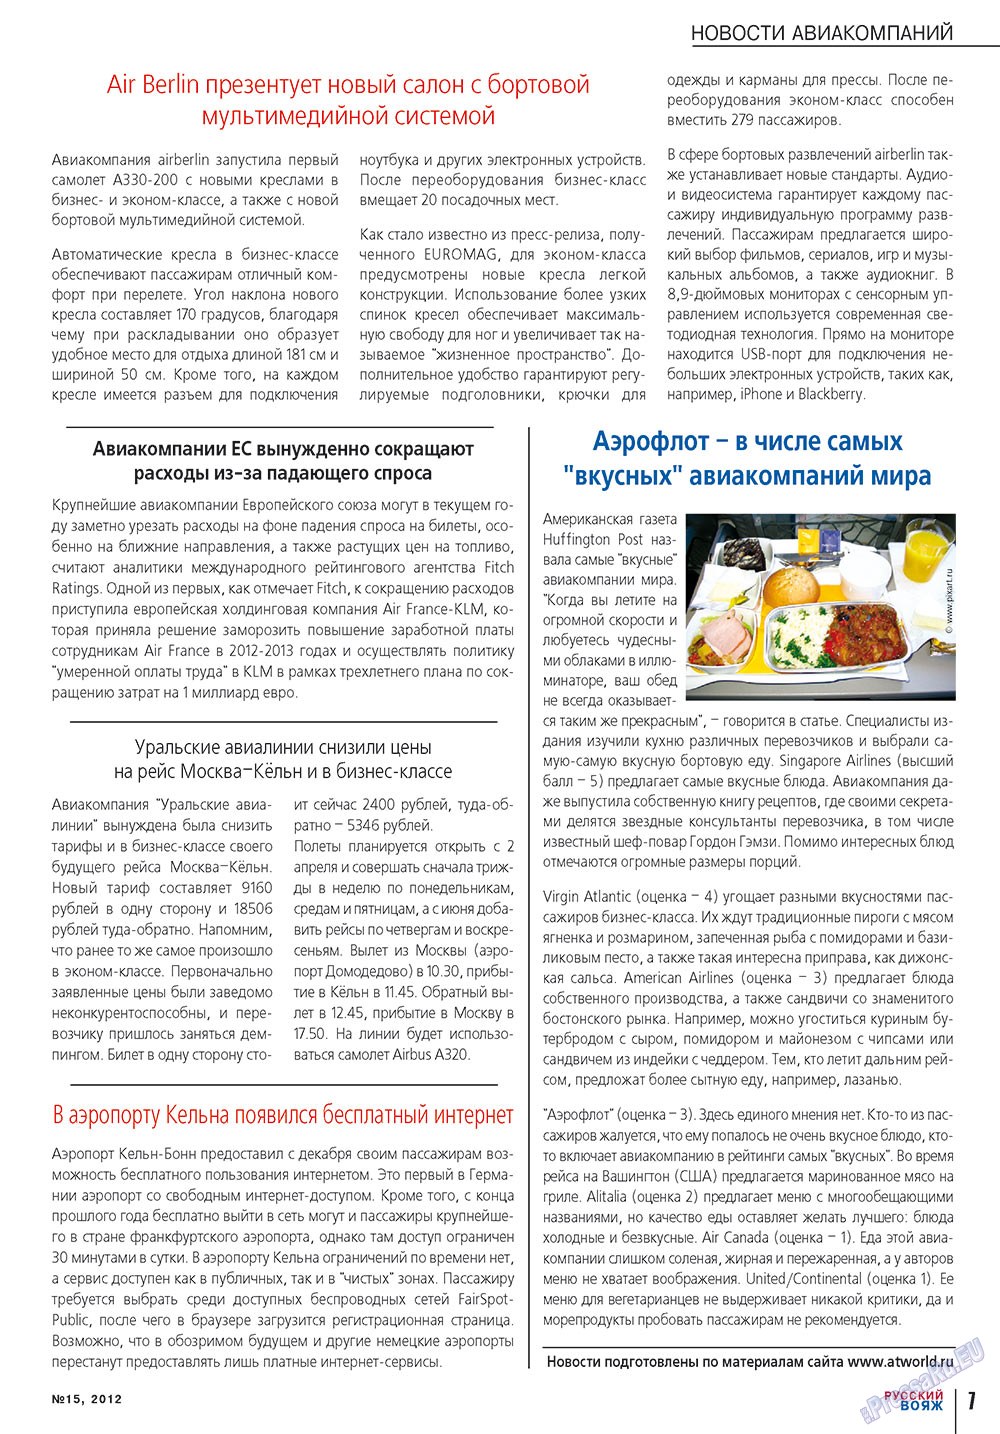 Русский вояж, журнал. 2012 №15 стр.7